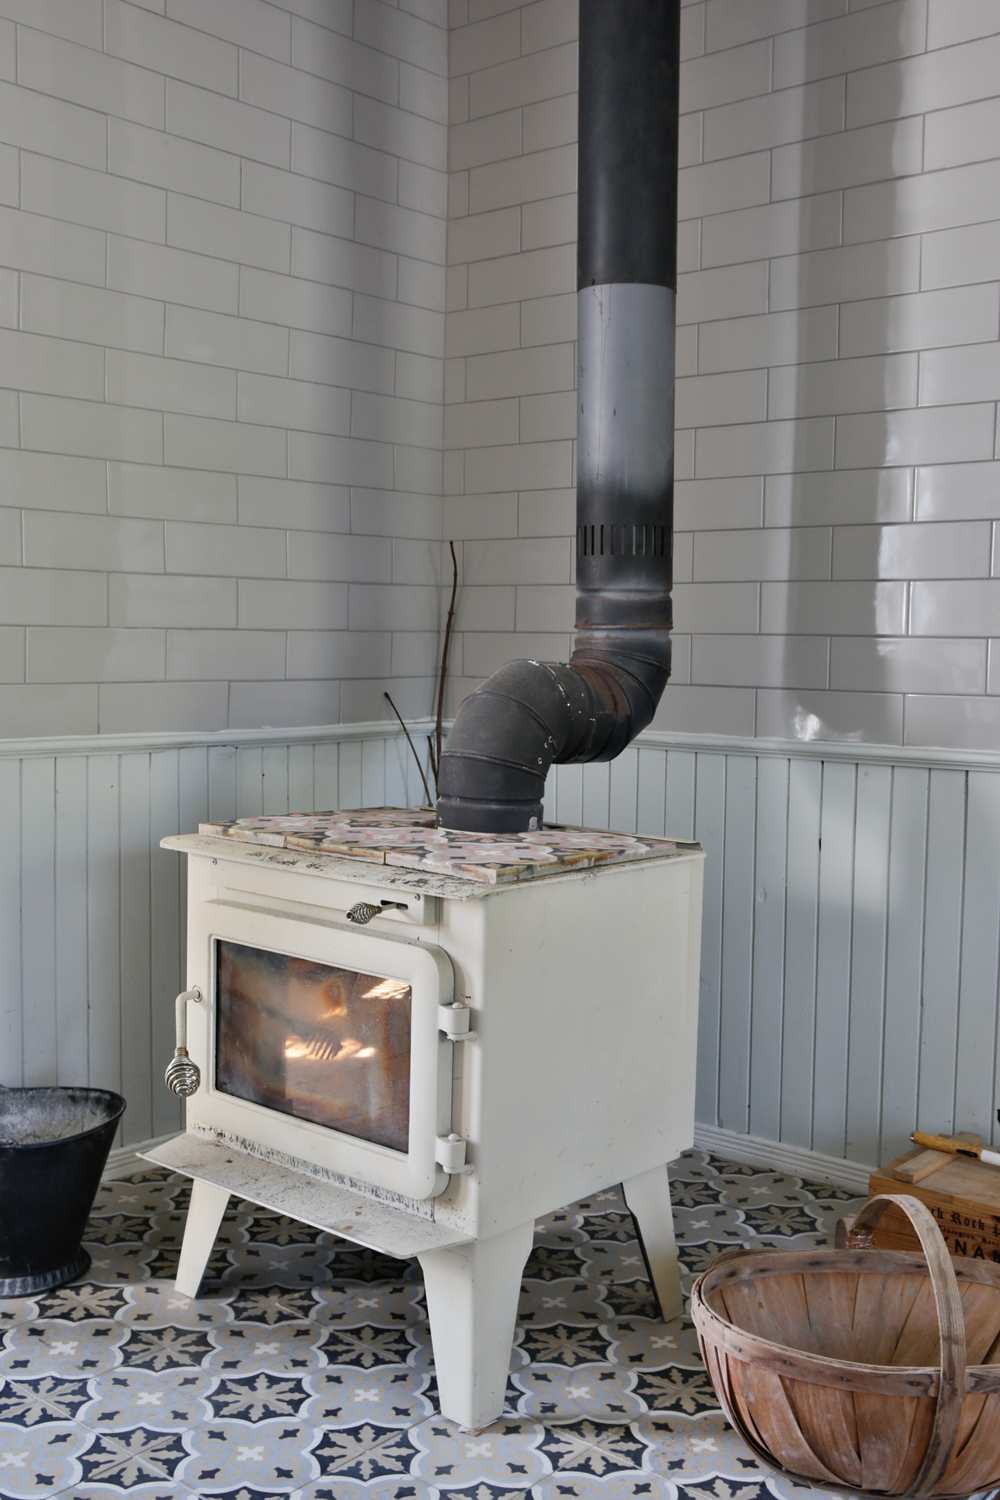 Vintage wood stove on ornate tiled floor